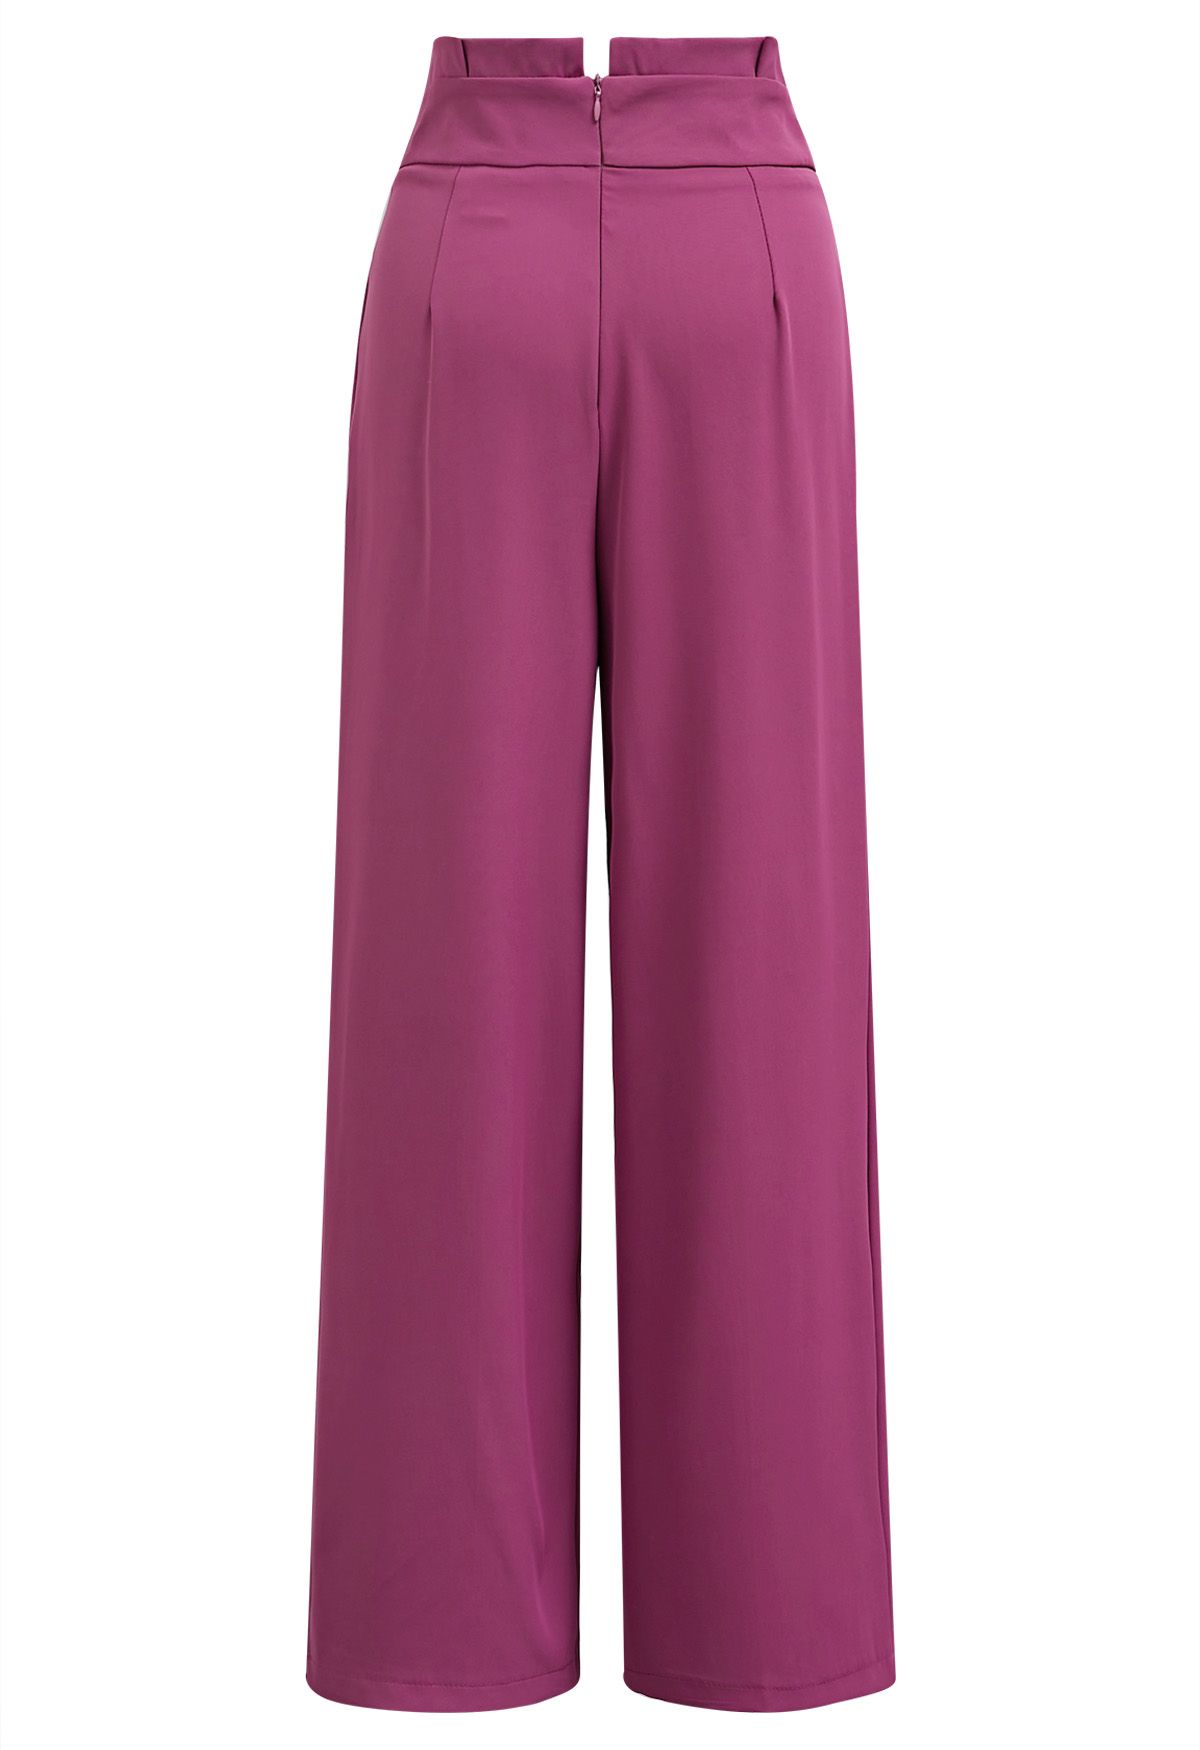 Pantalones rectos con cintura plisada en color baya